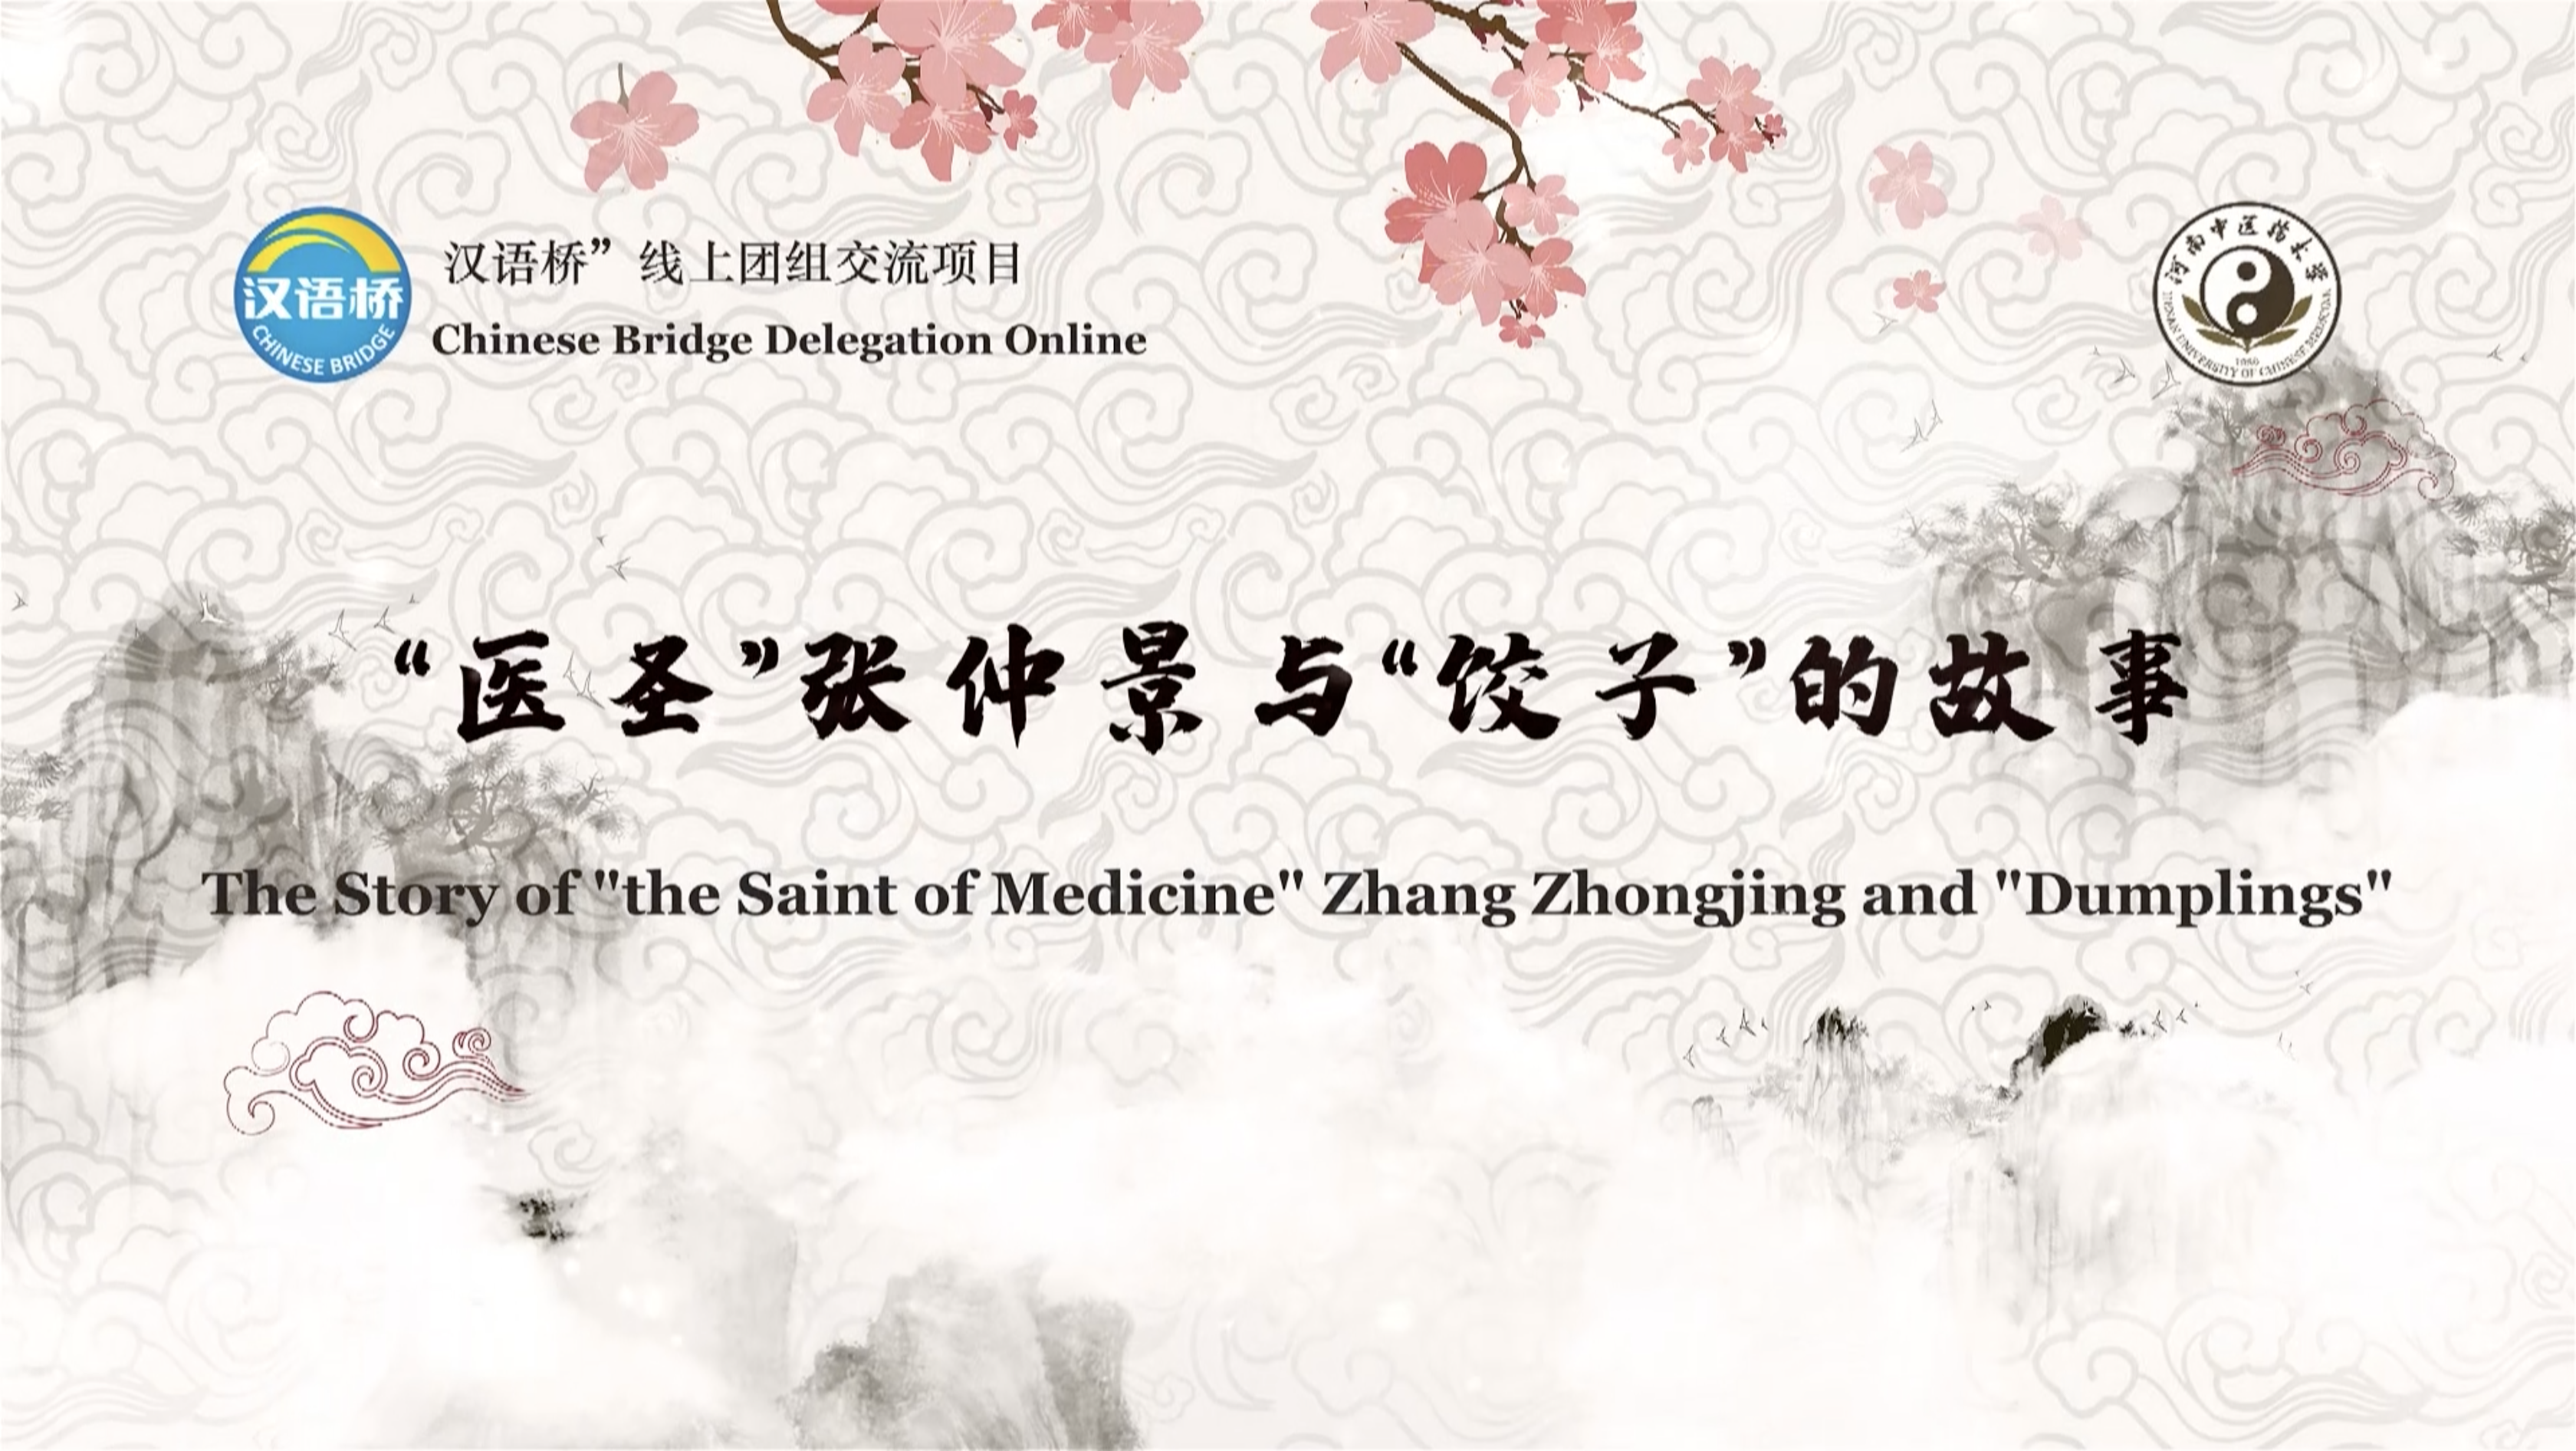 the Story of “the Saint of Medicine” Zhang Zhongjing and “Dumplings”